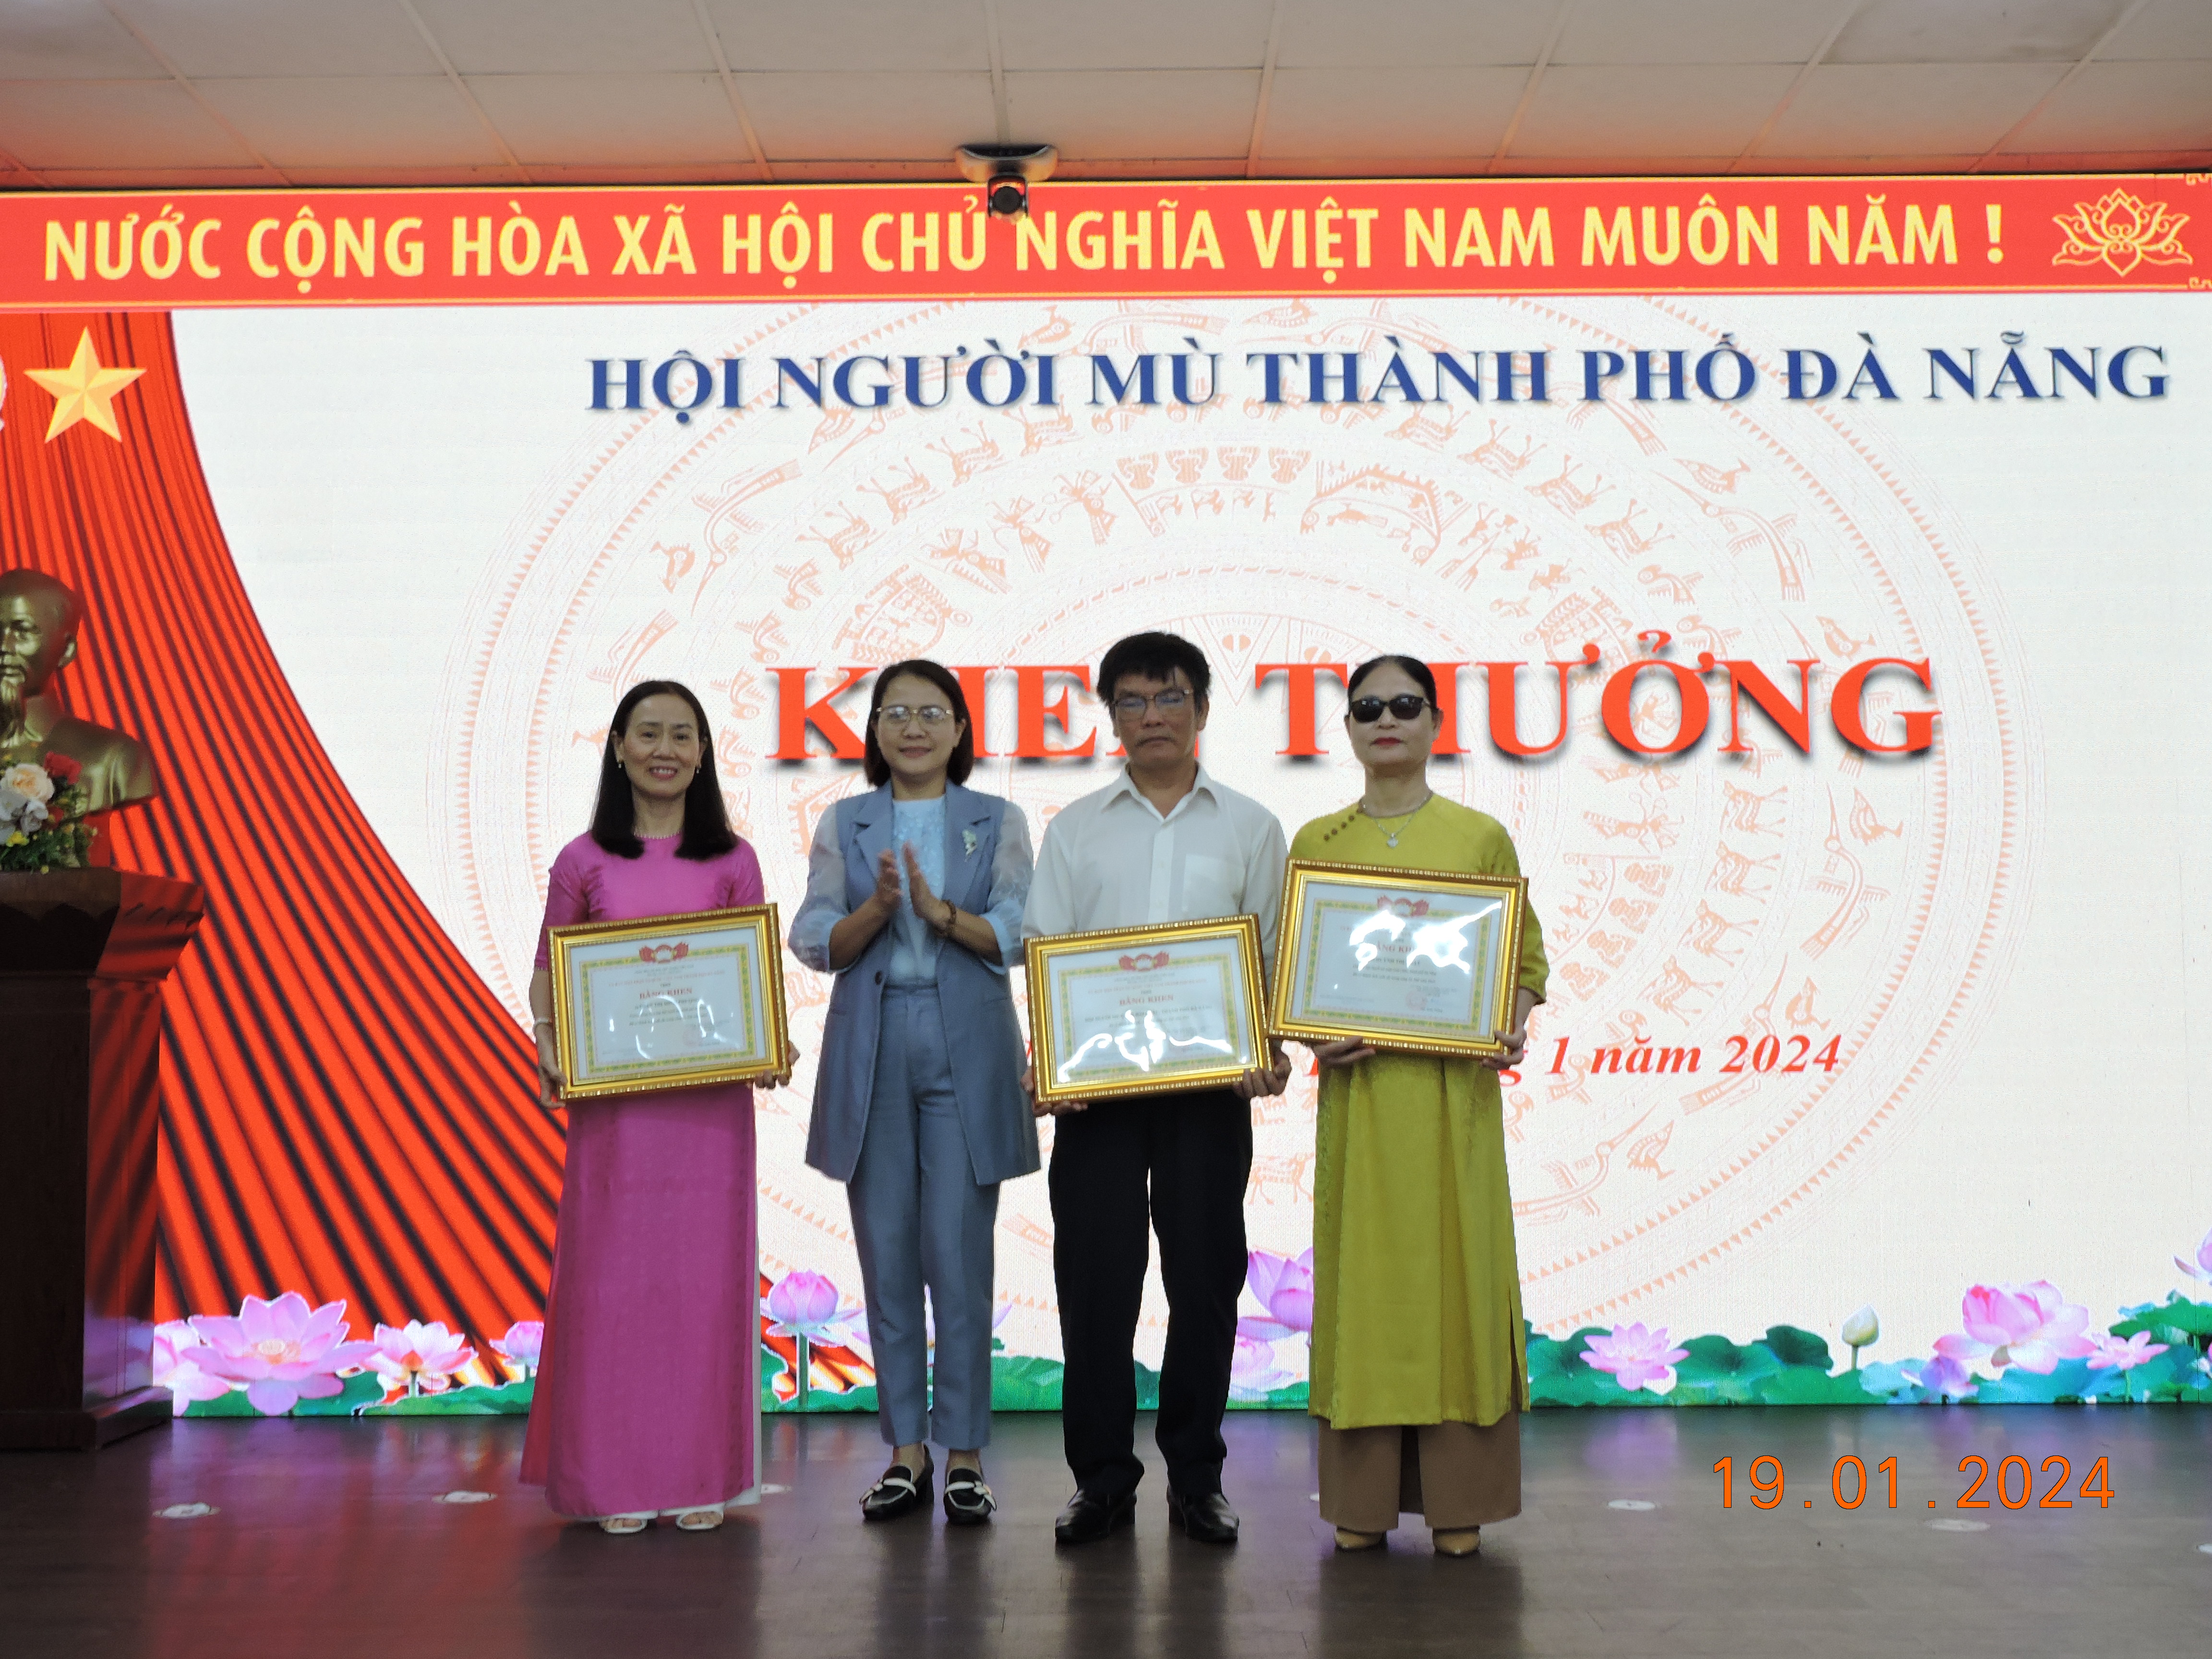 Hội nghị tổng kết công tác Hội năm 2023 tại Thành hội Đà Nẵng